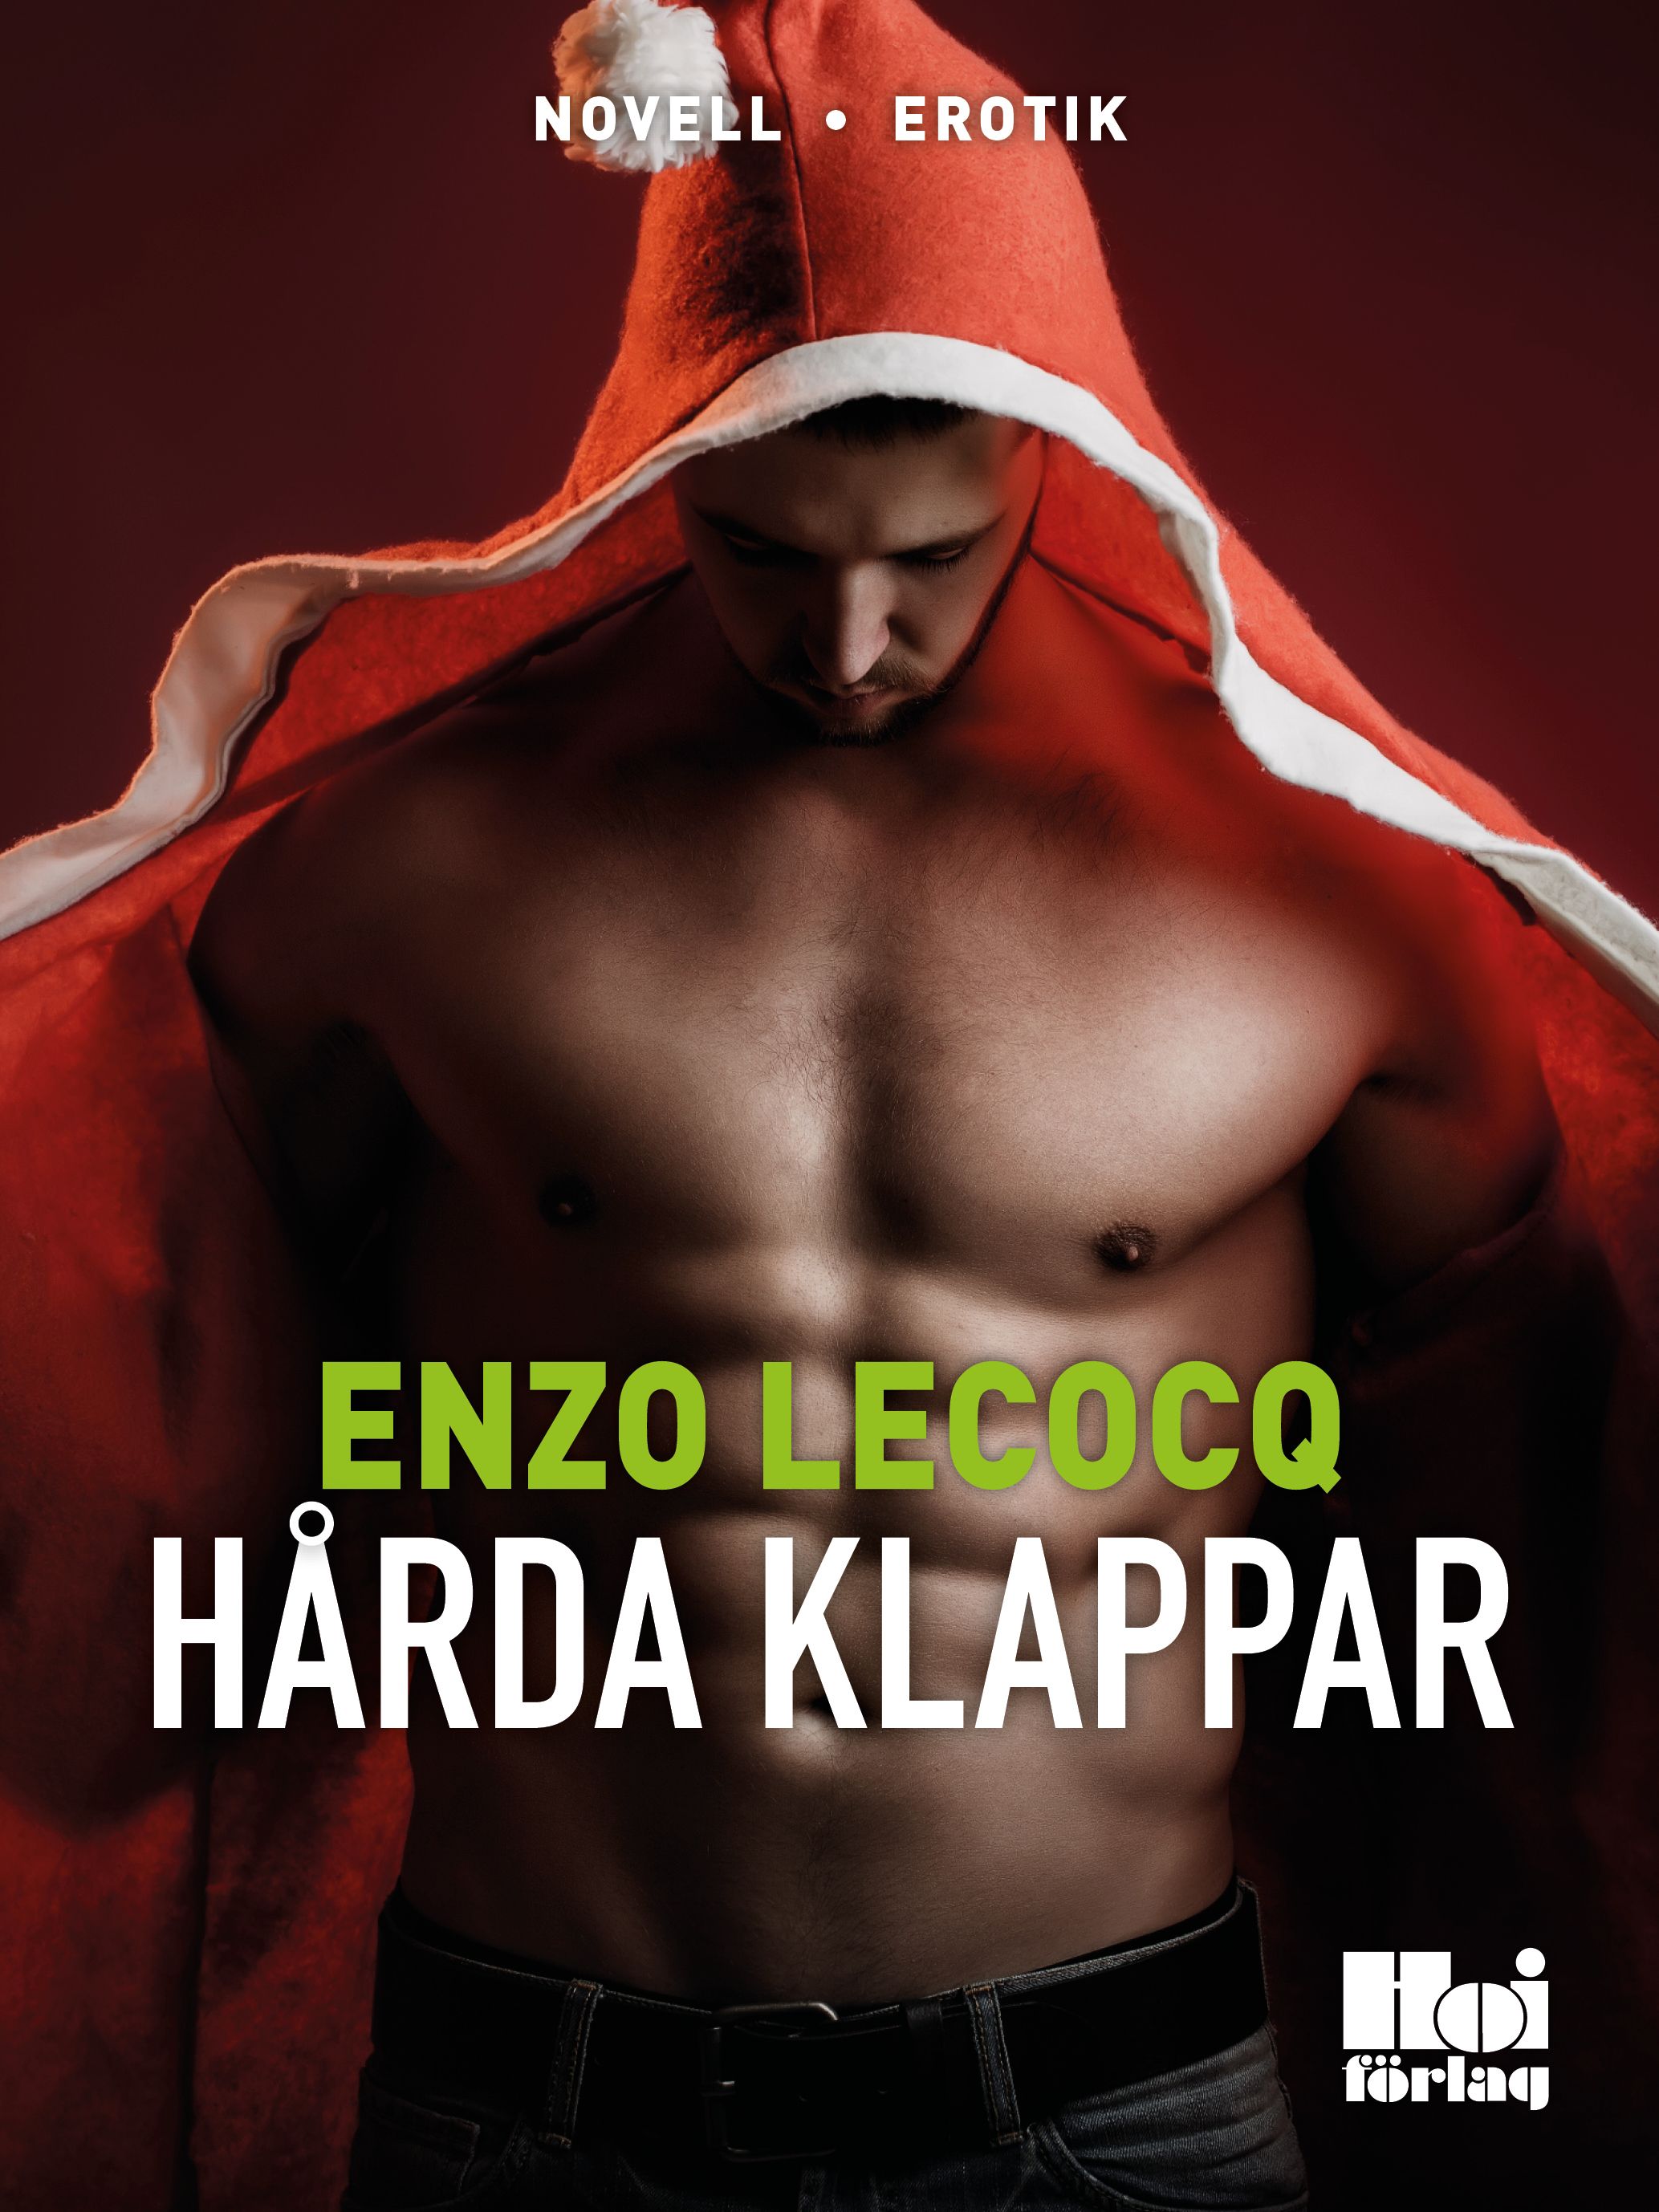 Hårda klappar, e-bog af Enzo Lecocq